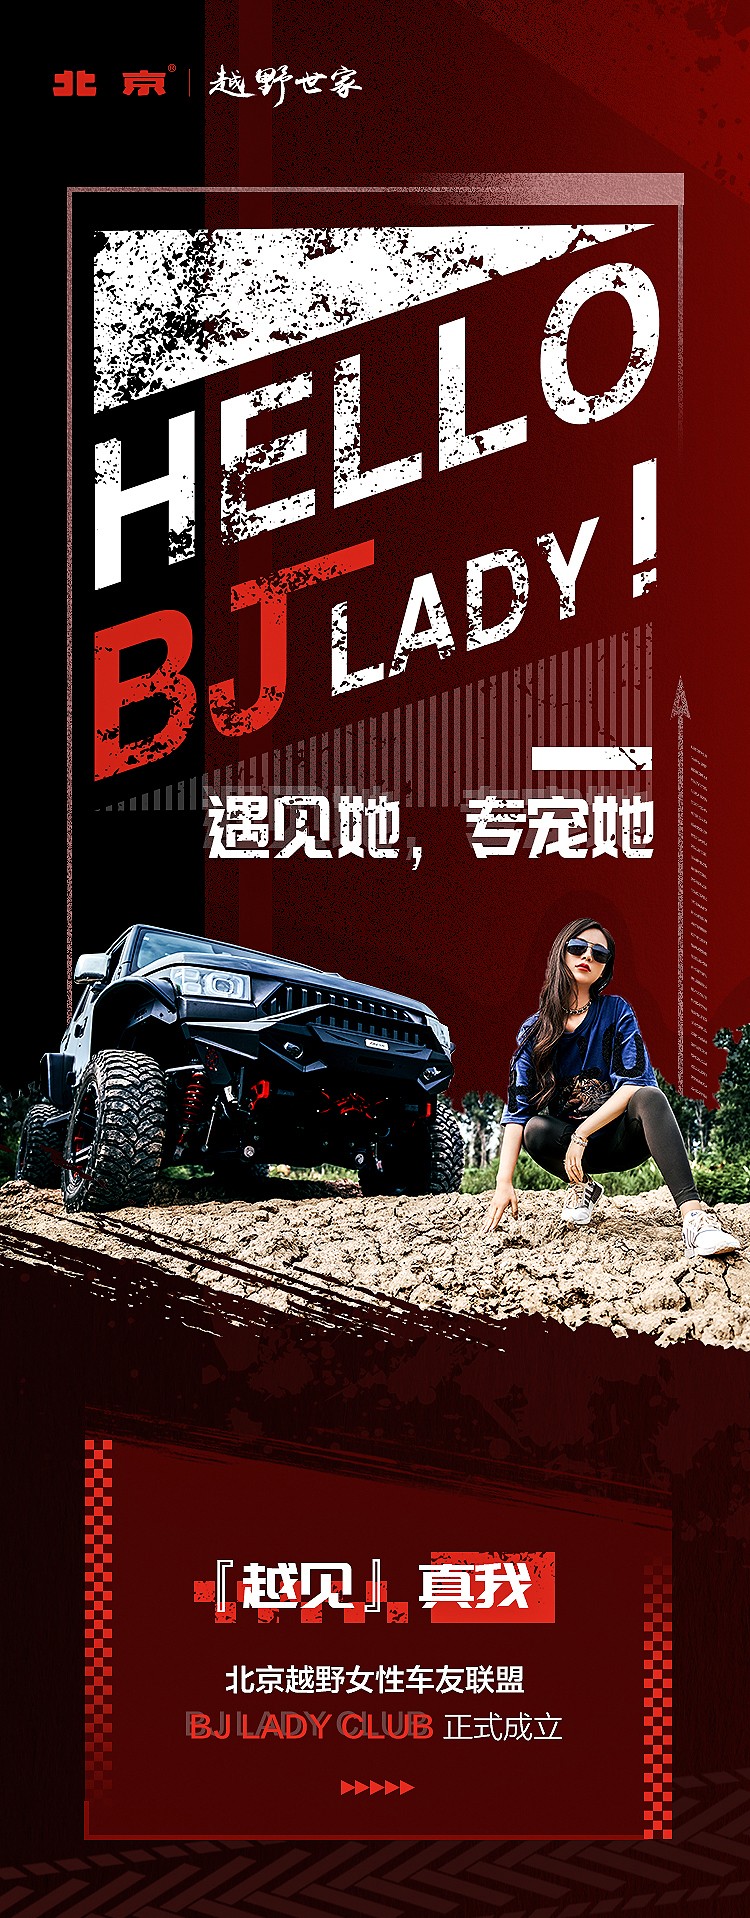 产品谱系驱动人群更多元，北京越野BJ LADY CLUB顺势成立